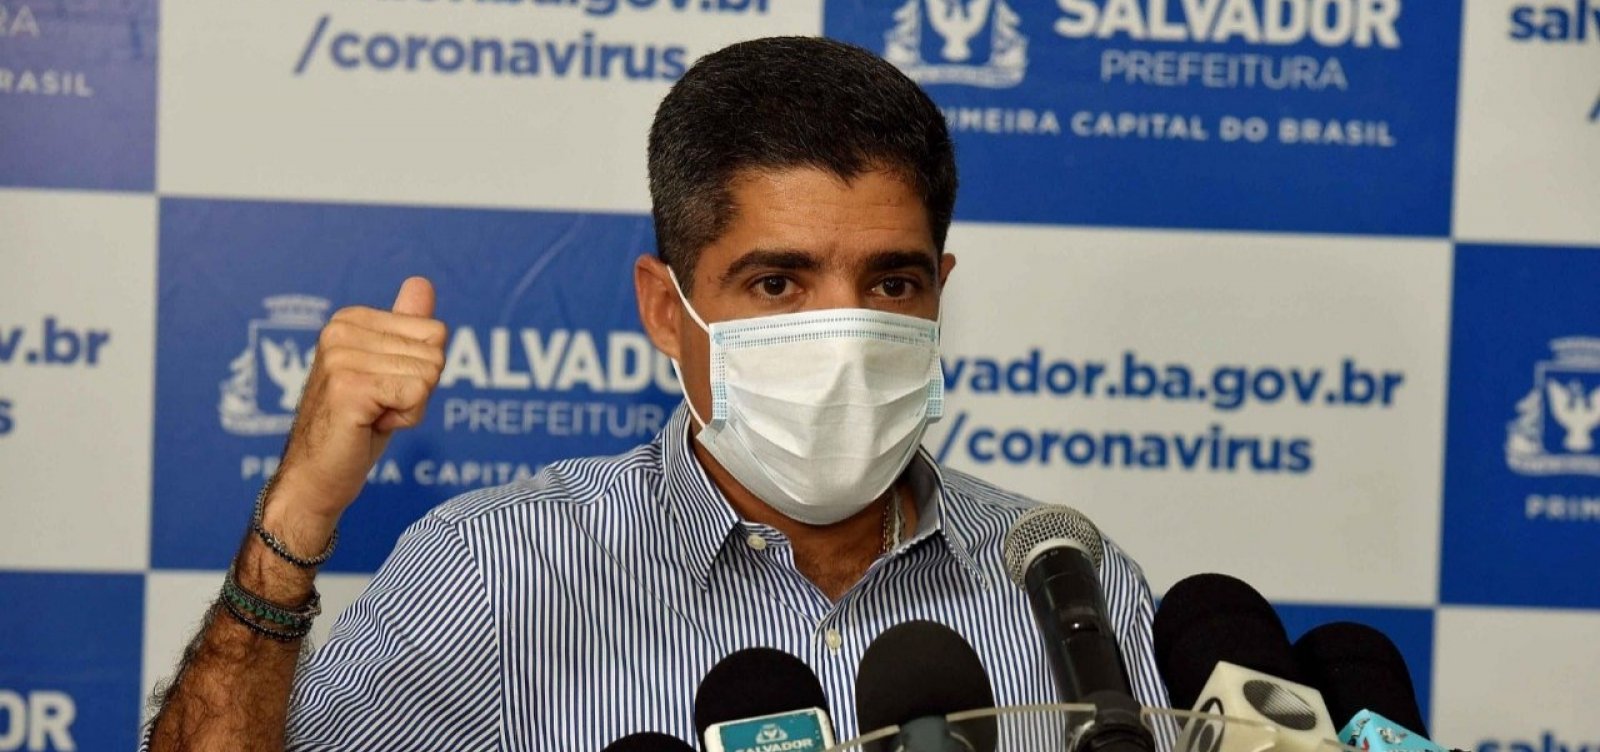 ACM Neto diz que situação crítica do Brasil com coronavírus se deve à postura de Bolsonaro